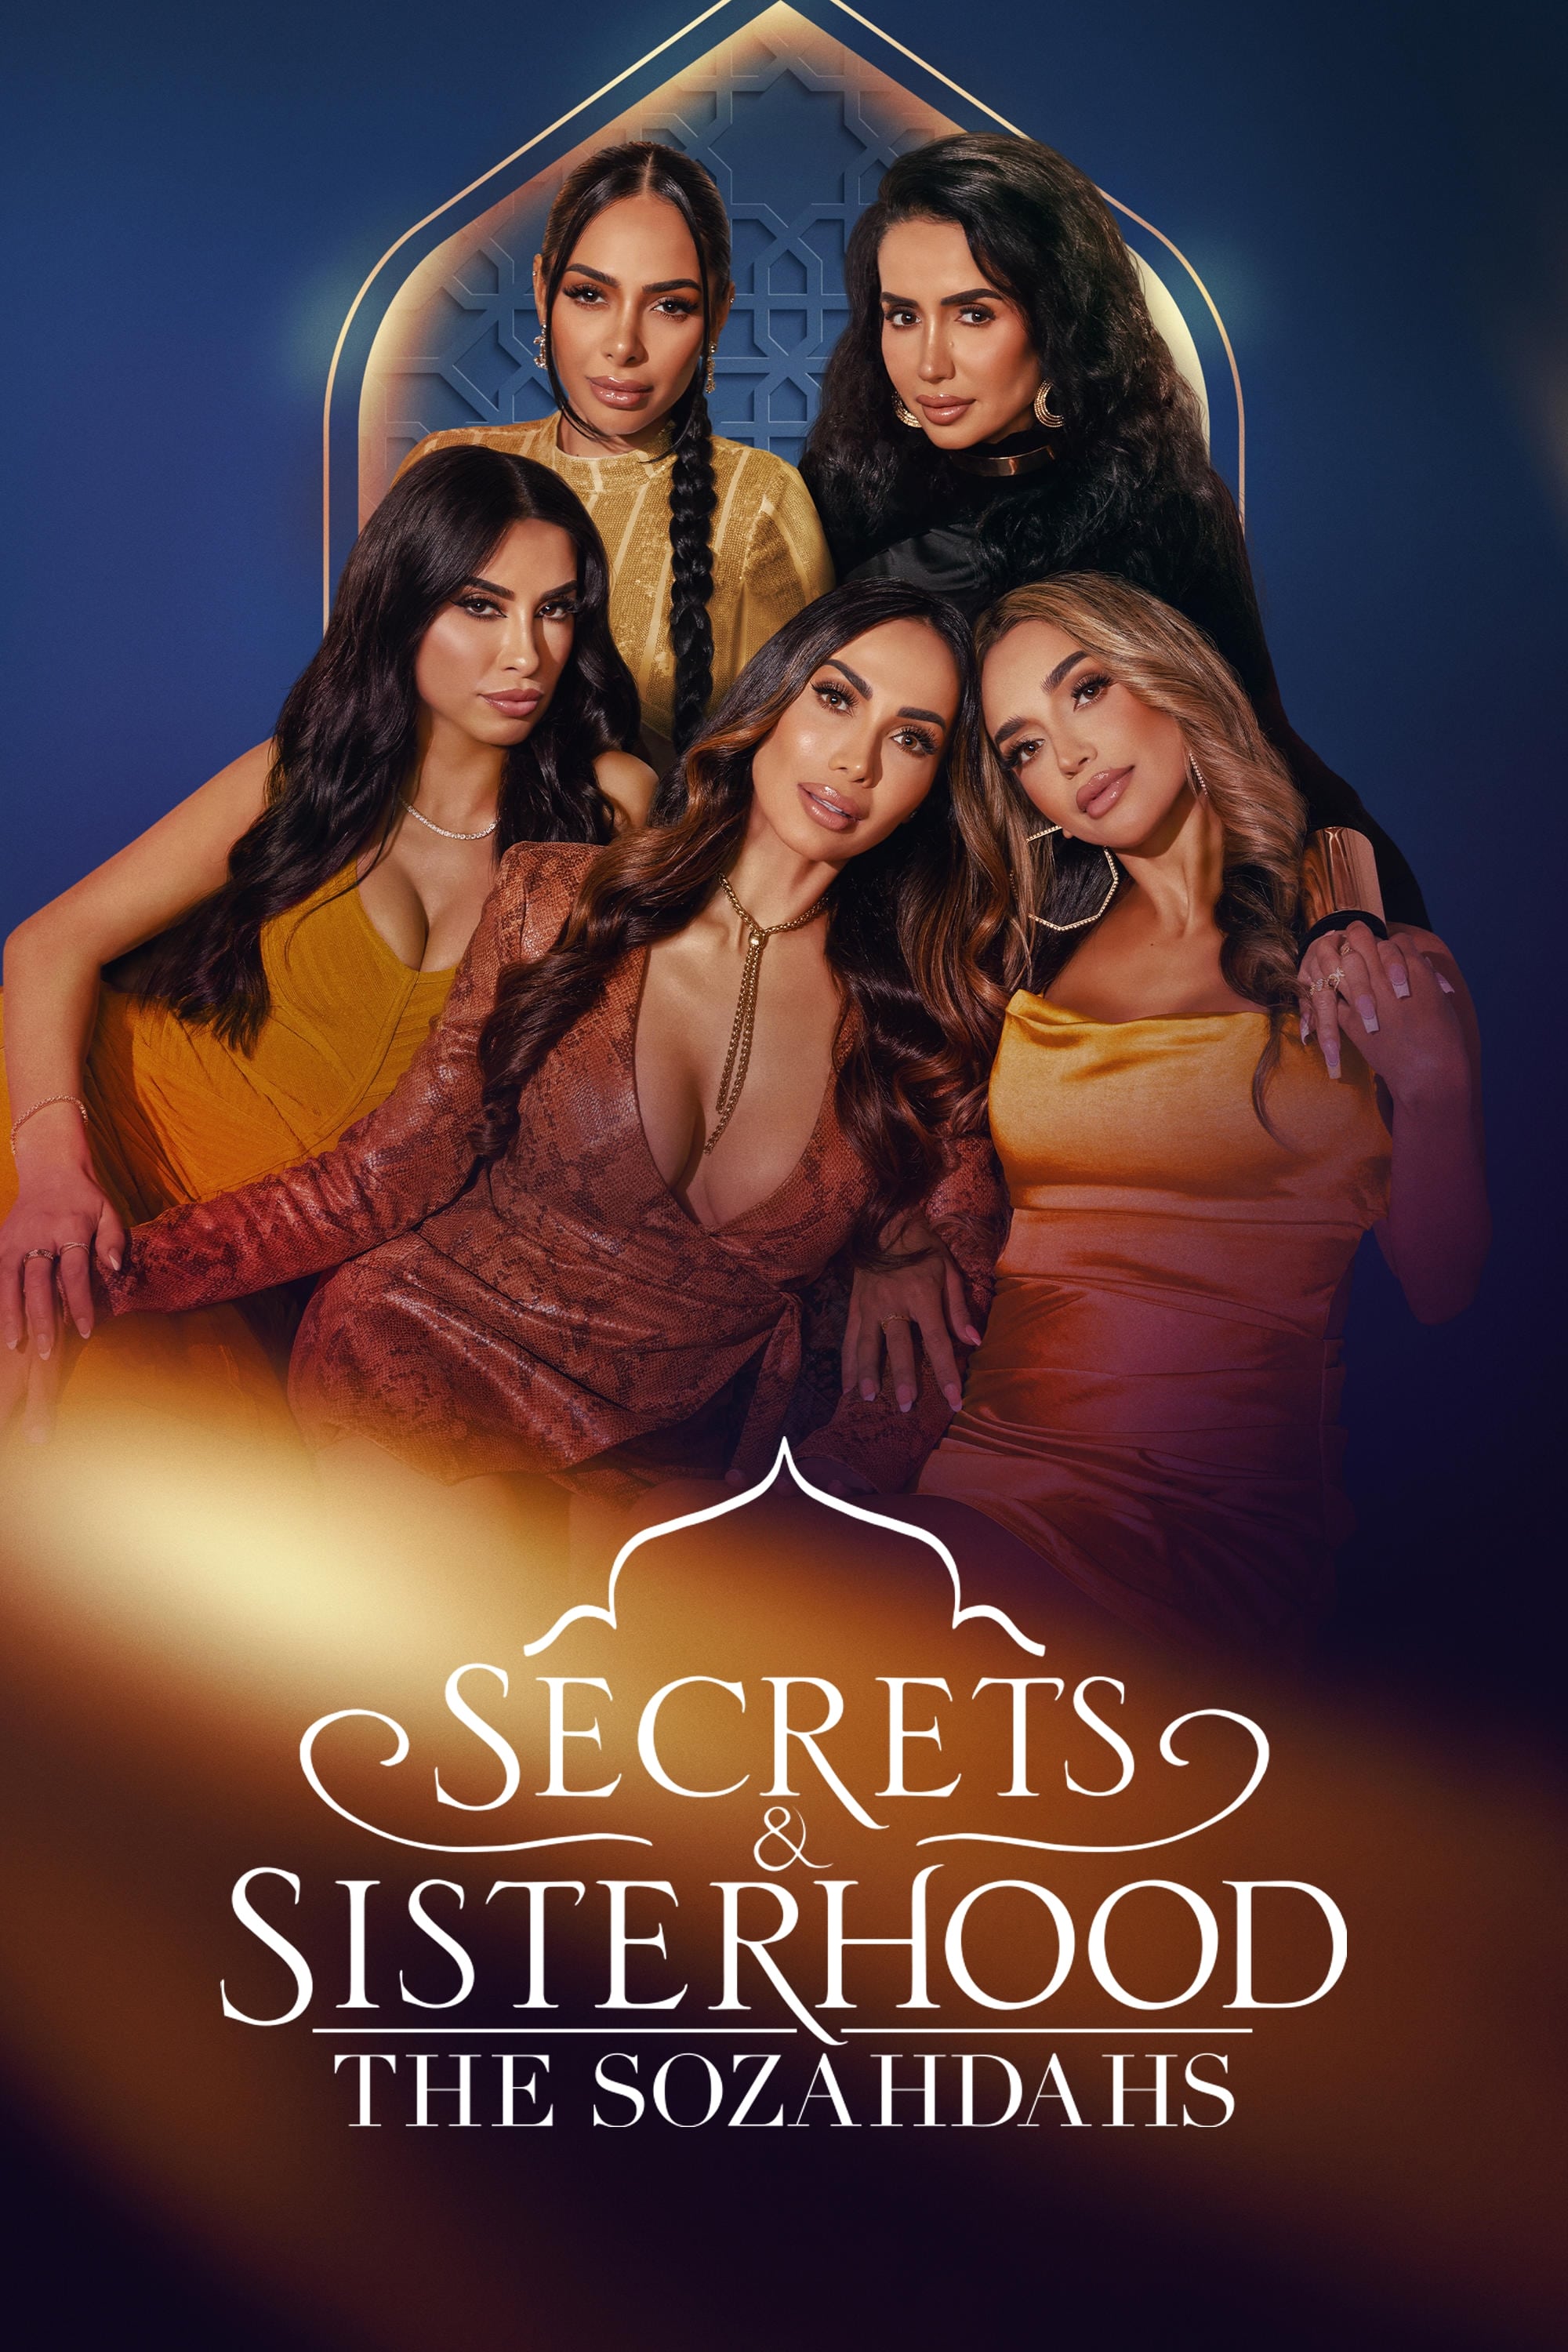 Secrets & Sisterhood: The Sozahdahs TV Shows About Angel